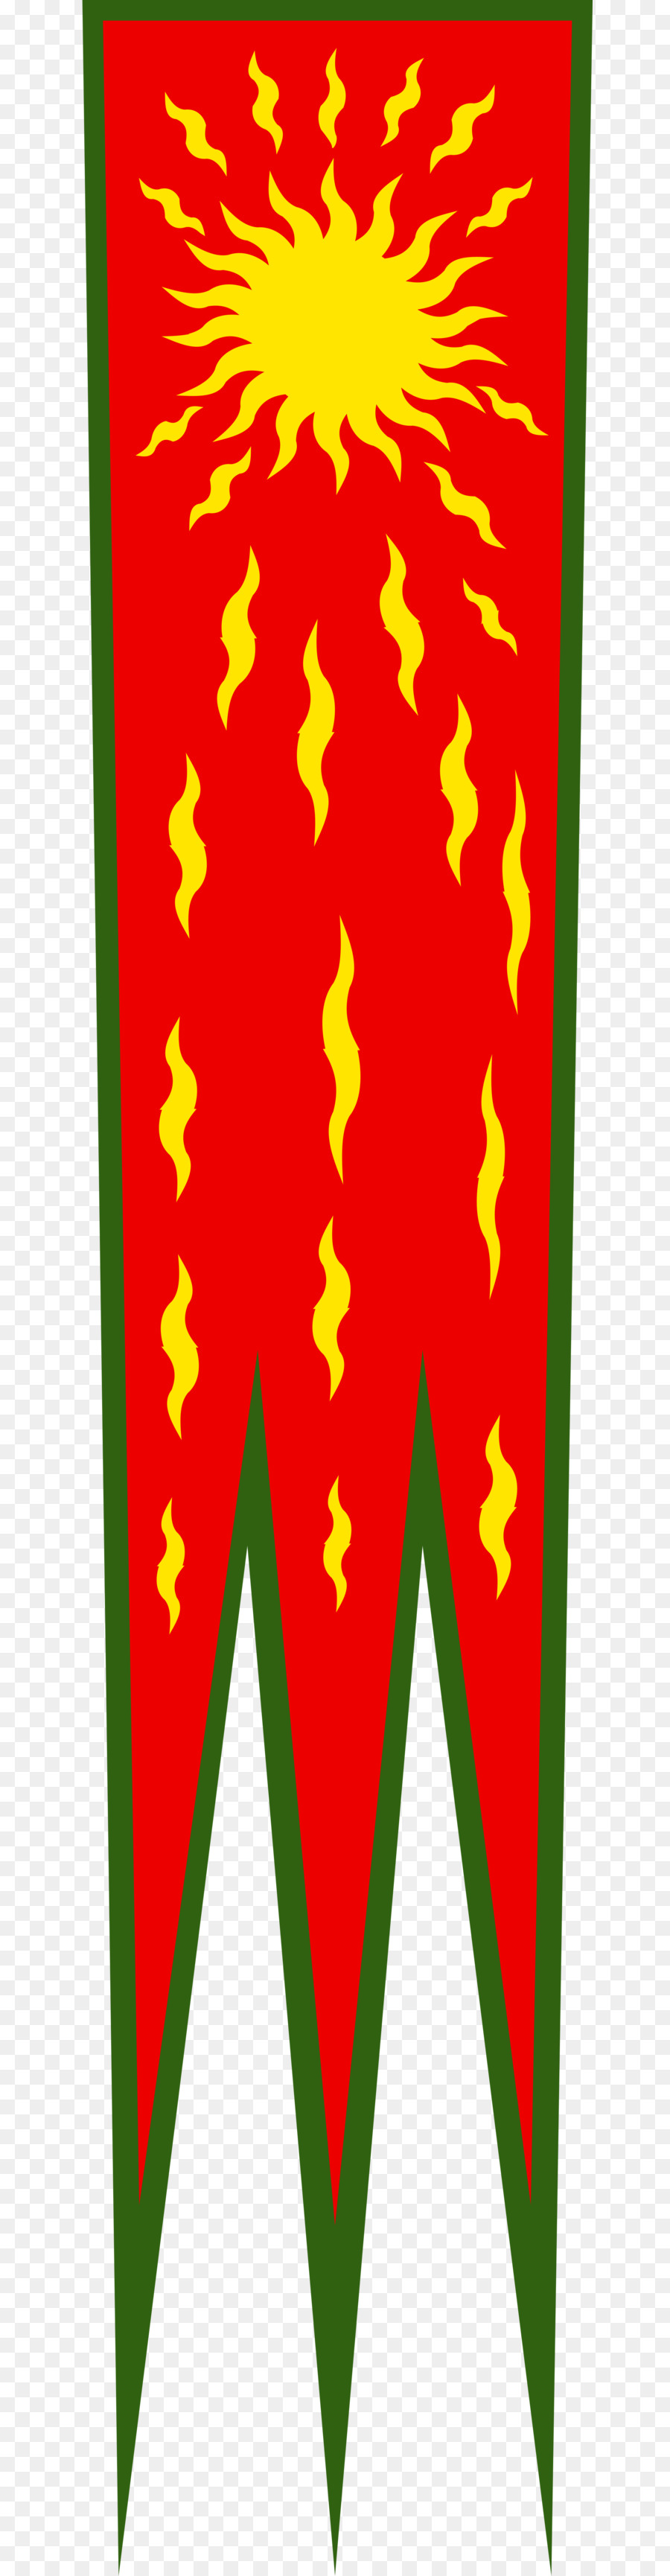 Oriflamme karolingischen Reich Wappen Flagge karolingischen Dynastie - Afghanistan Flagge